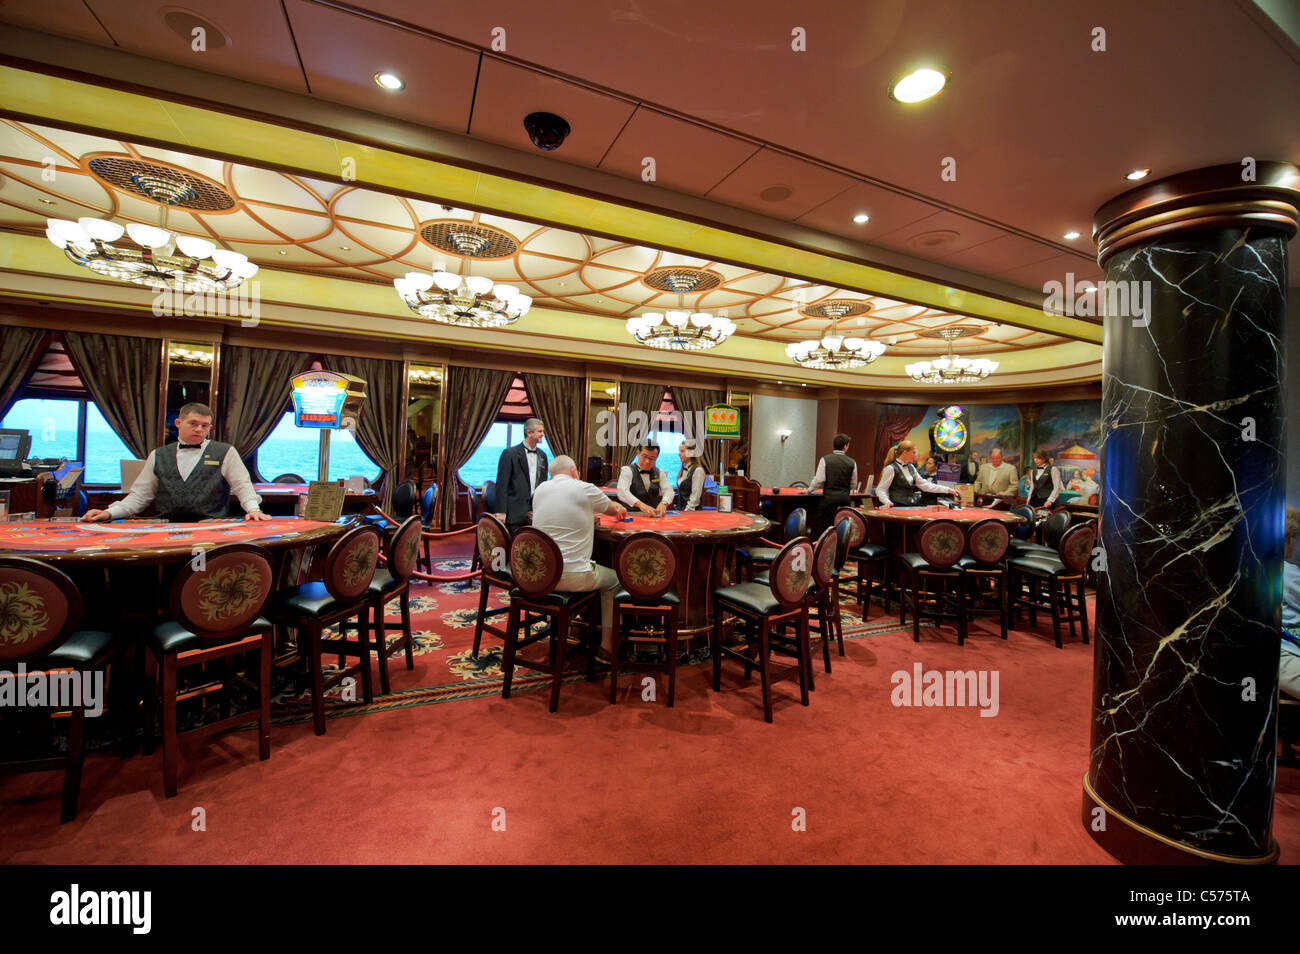 La riproduzione di giochi di carte nell'impero Casino è uno degli intrattenimenti previsti sul famoso Cunard Queen Mary 2 ocean liner. Foto Stock